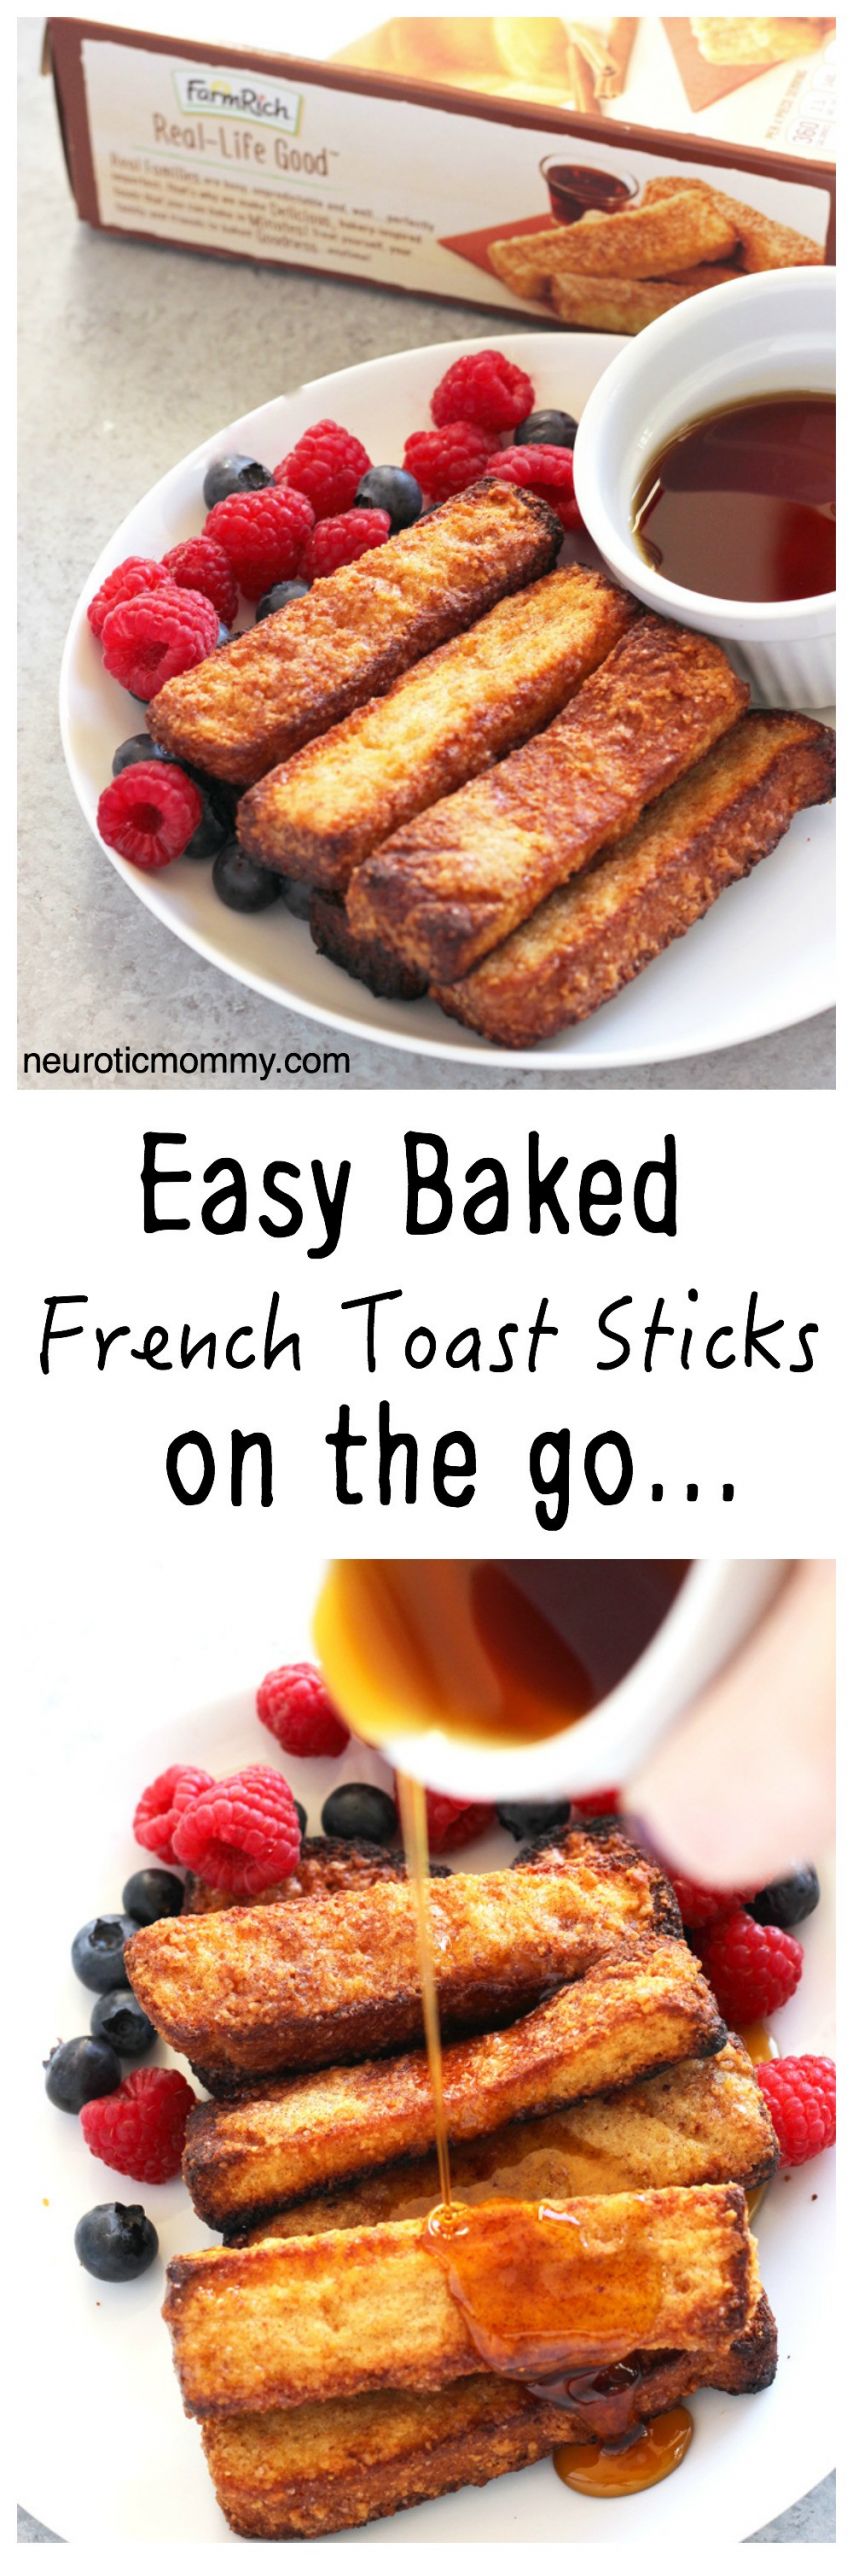 Vegan Breakfast Easy On The Go
 Easy Baked French Toast Sticks the Go